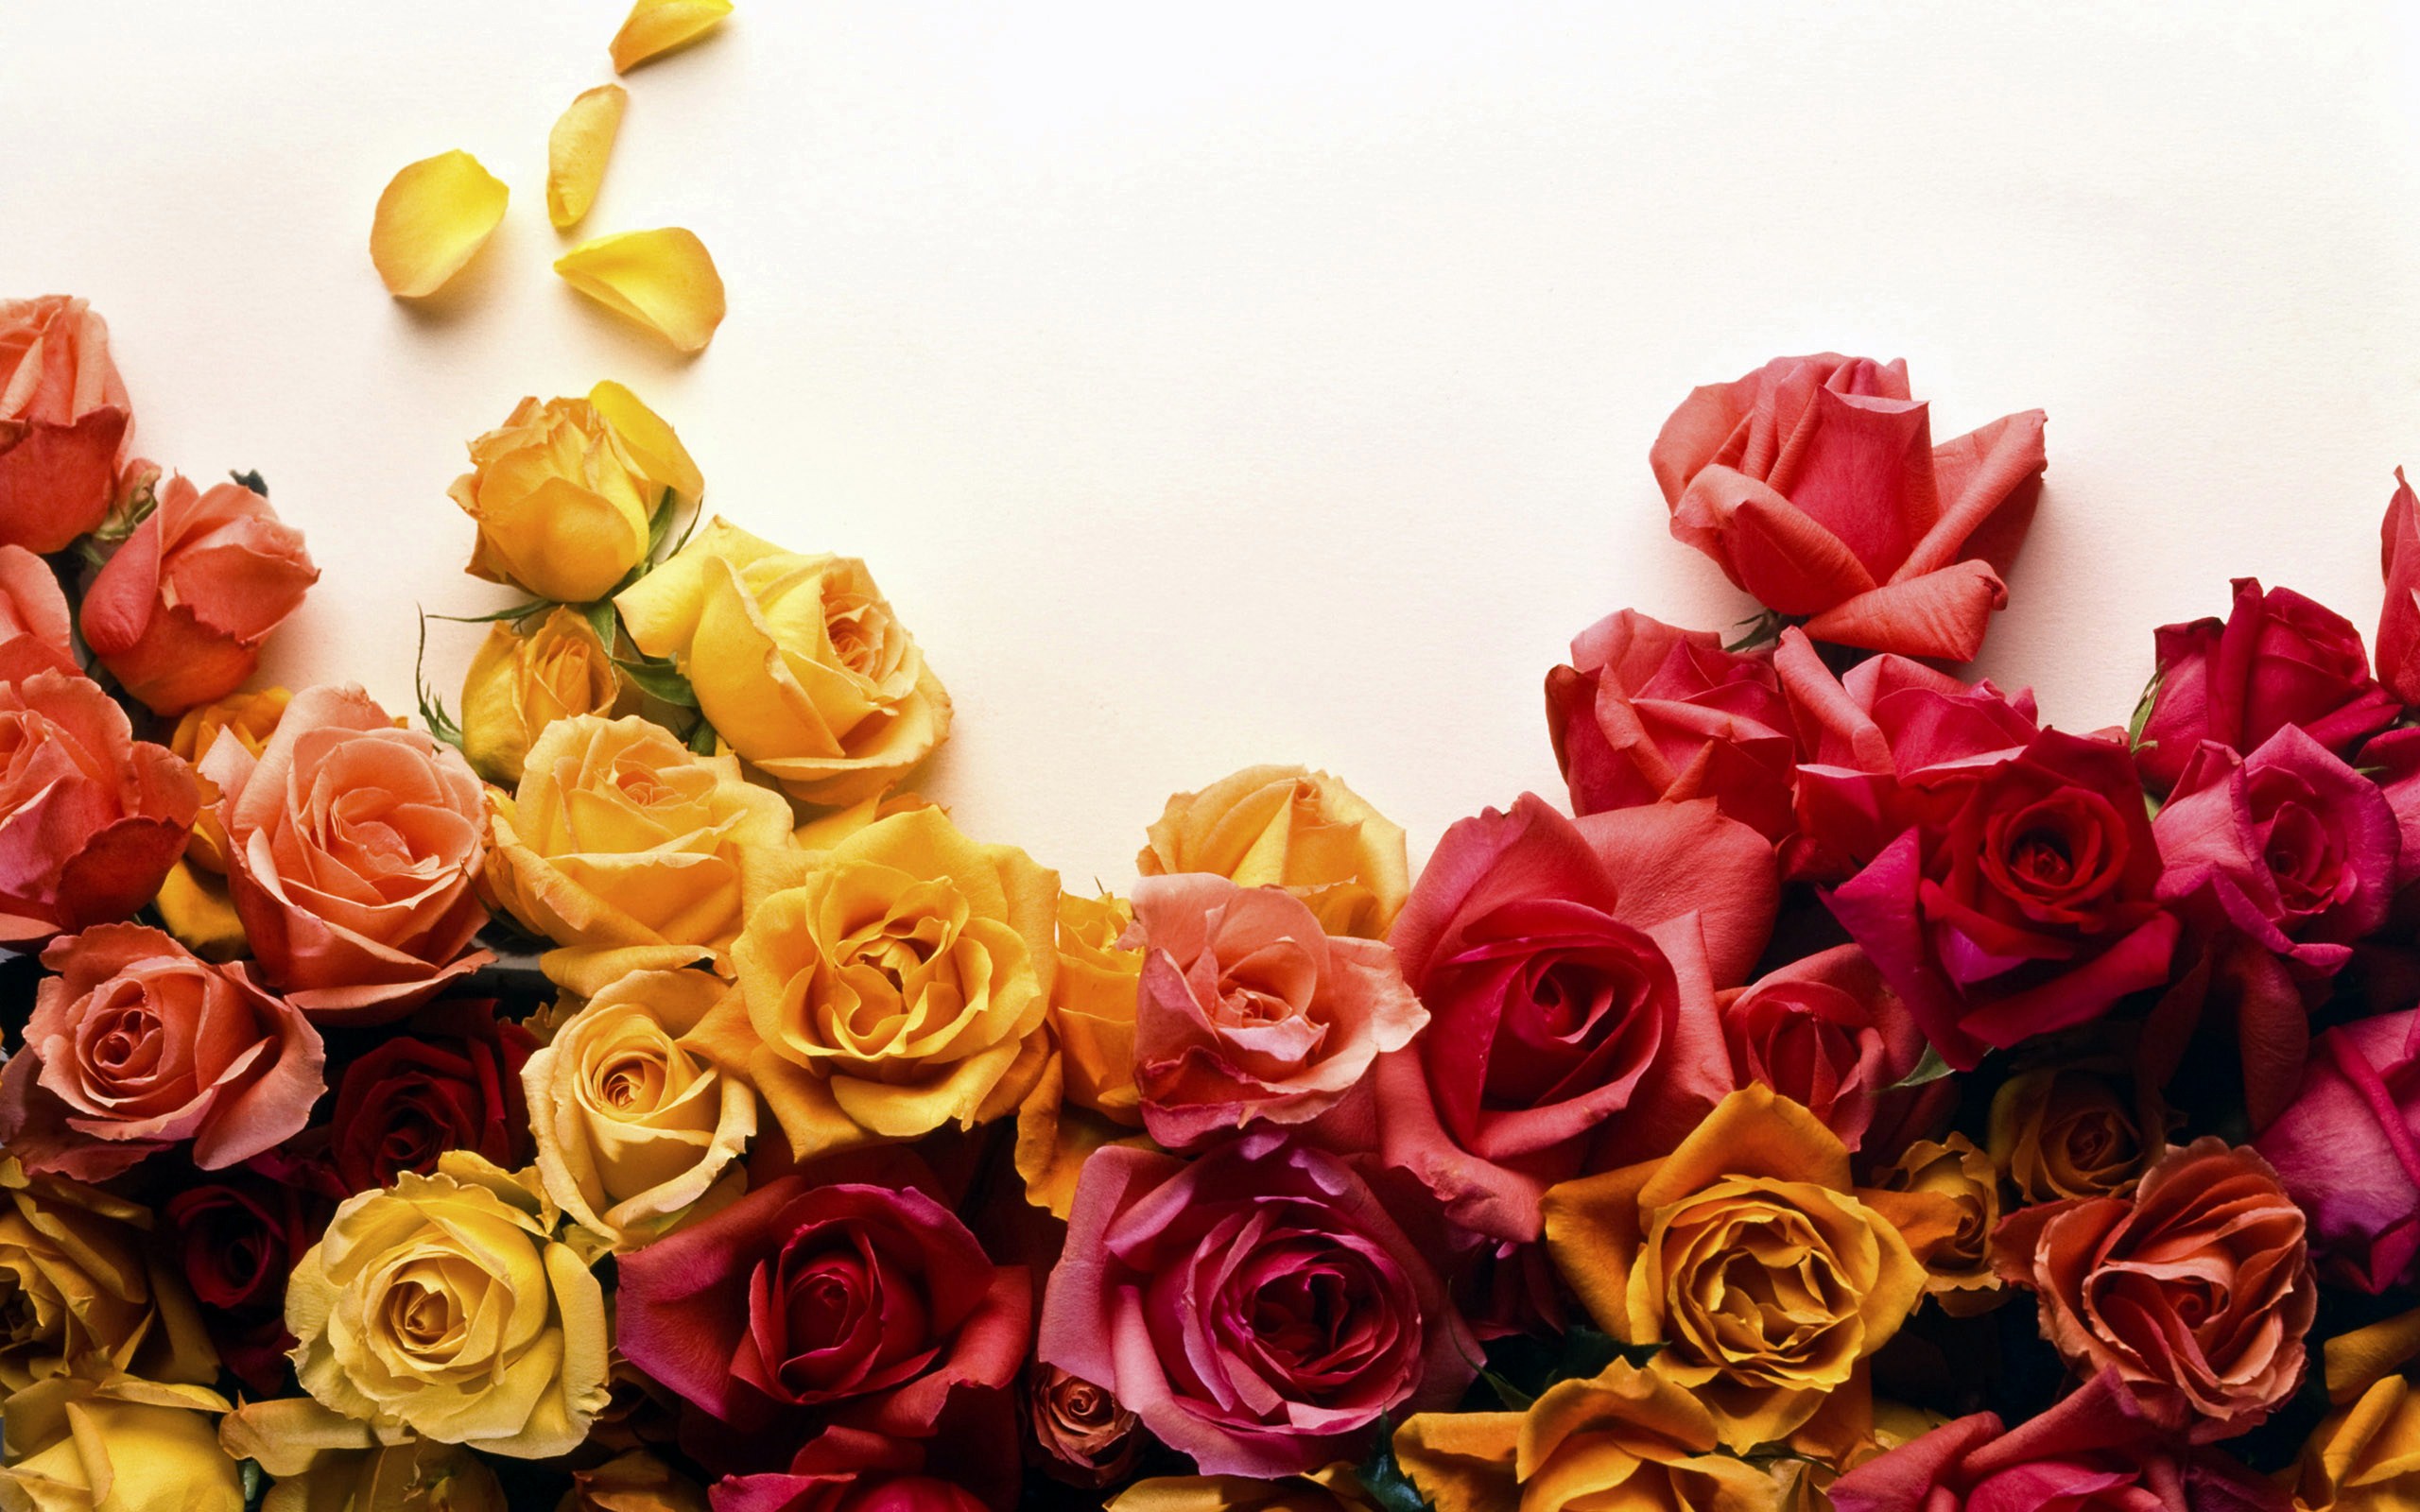 39+] Color Roses Wallpaper HD - WallpaperSafari